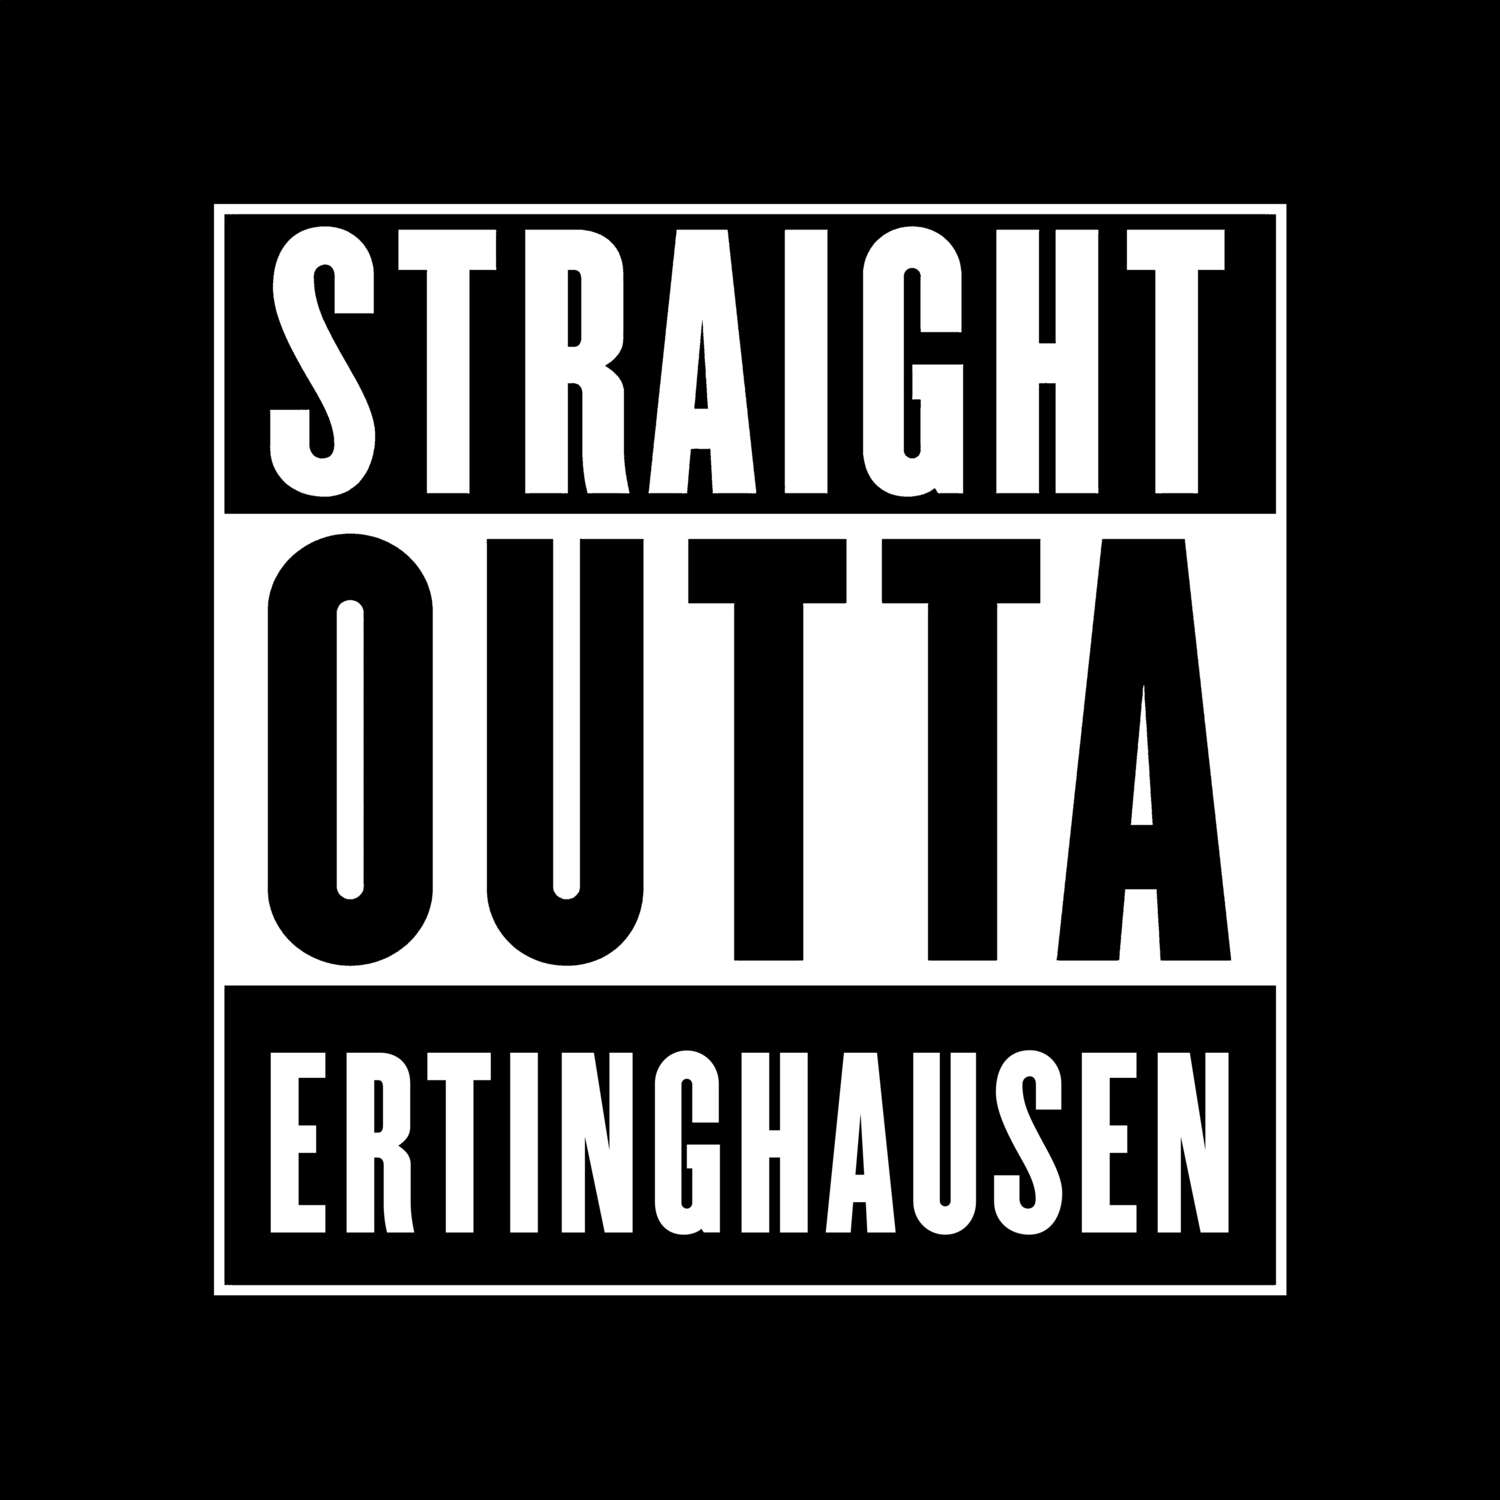 Ertinghausen T-Shirt »Straight Outta«